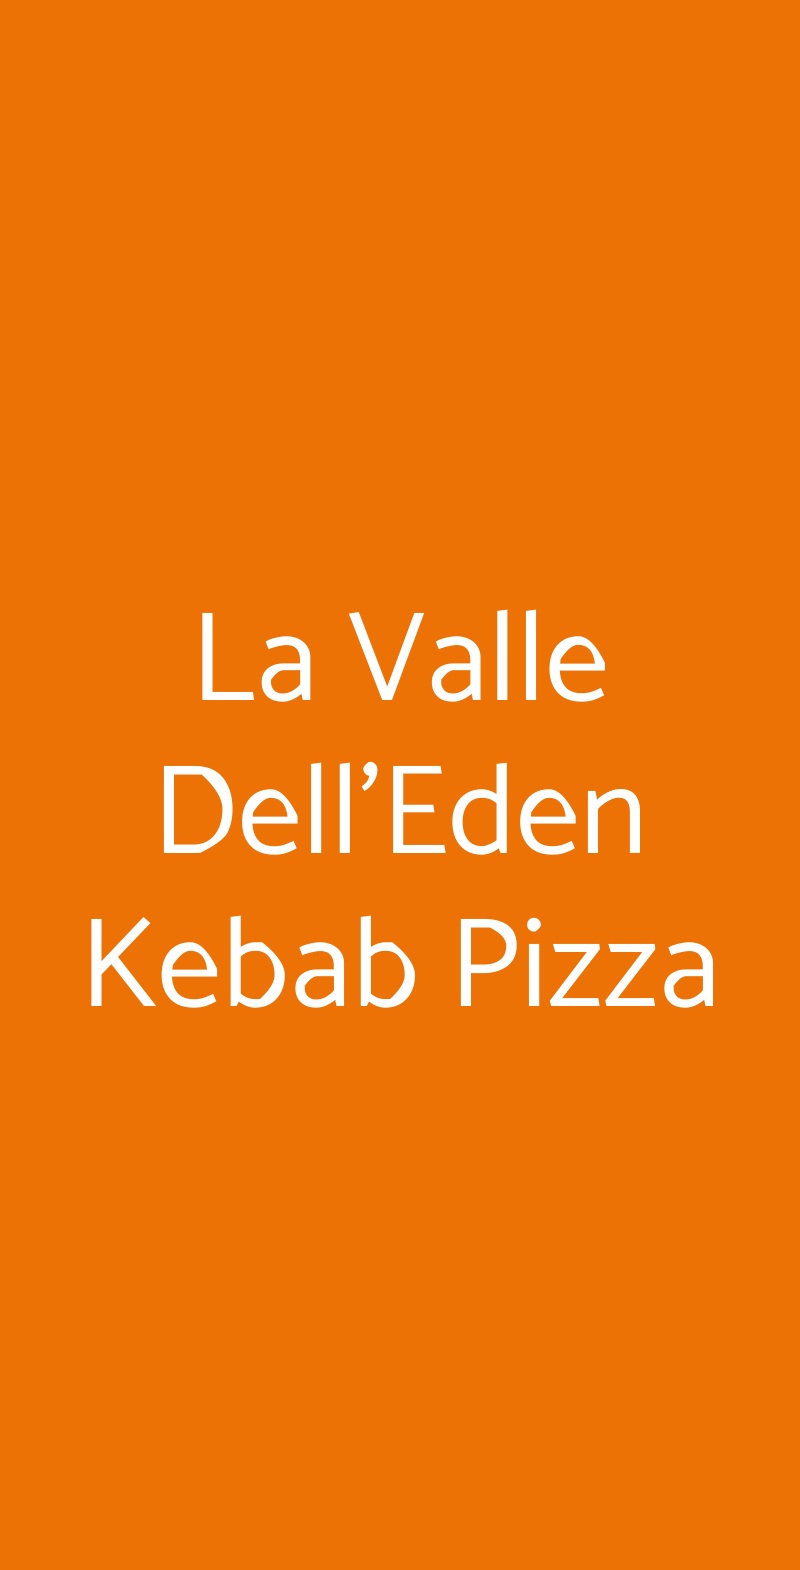 La Valle Dell'Eden Kebab Pizza Parma menù 1 pagina